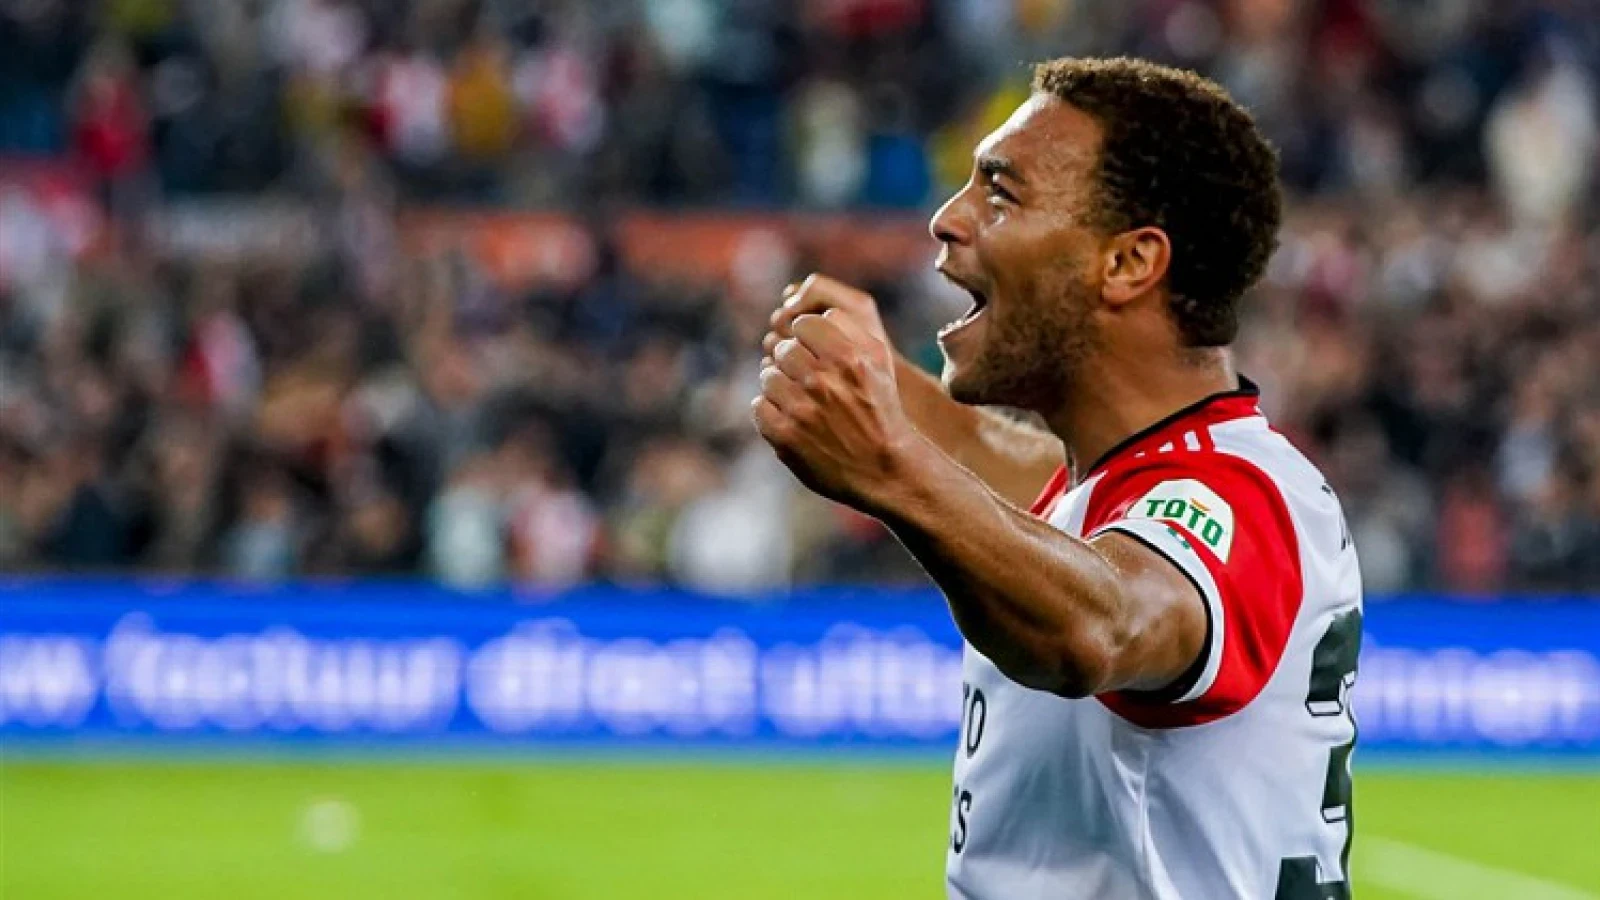 VIDEO | Dit zijn de doelpunten van Feyenoord in de oefenwedstrijd tegen De Graafschap